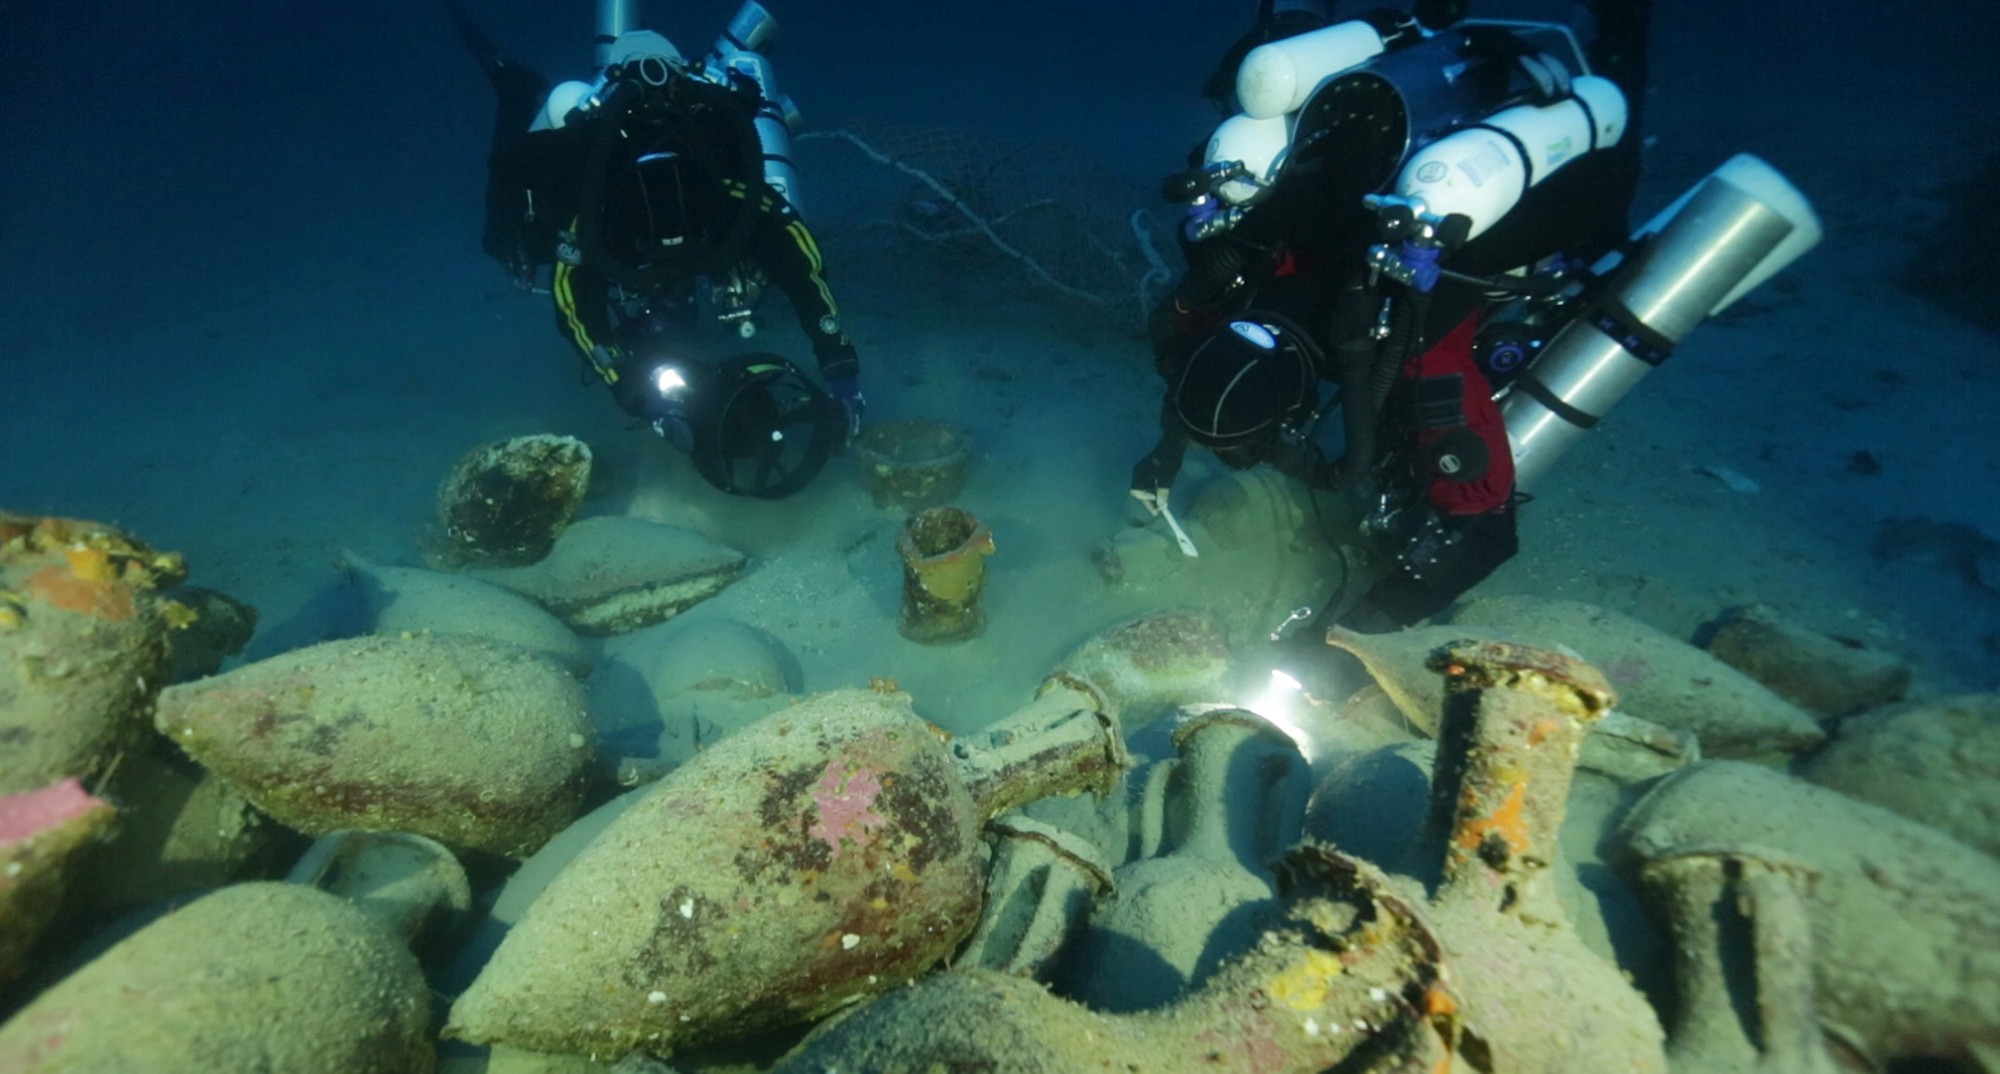 Divers explore ancient shipwreck - The Columbian